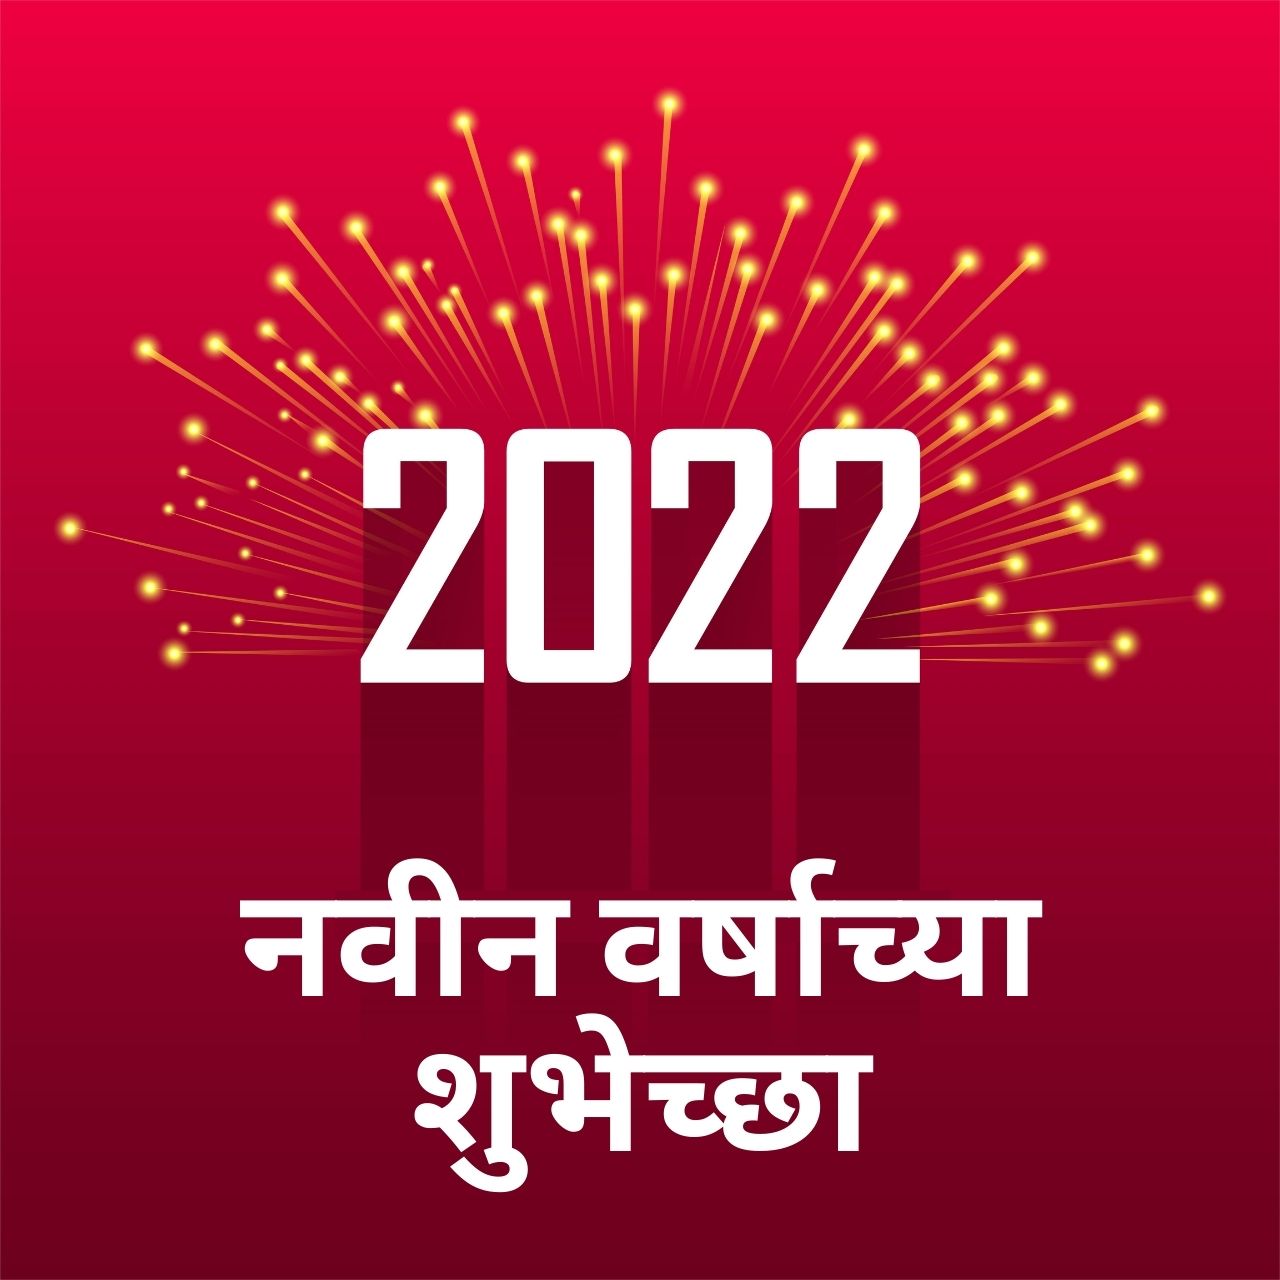 హ్యాపీ న్యూ ఇయర్ 2022: తెలుగు శుభాకాంక్షలు, శుభాకాంక్షలు, కోట్‌లు, HD చిత్రాలు, సందేశాలు, పదబంధాలు మరియు పంచుకోవడానికి పోస్టర్‌లు